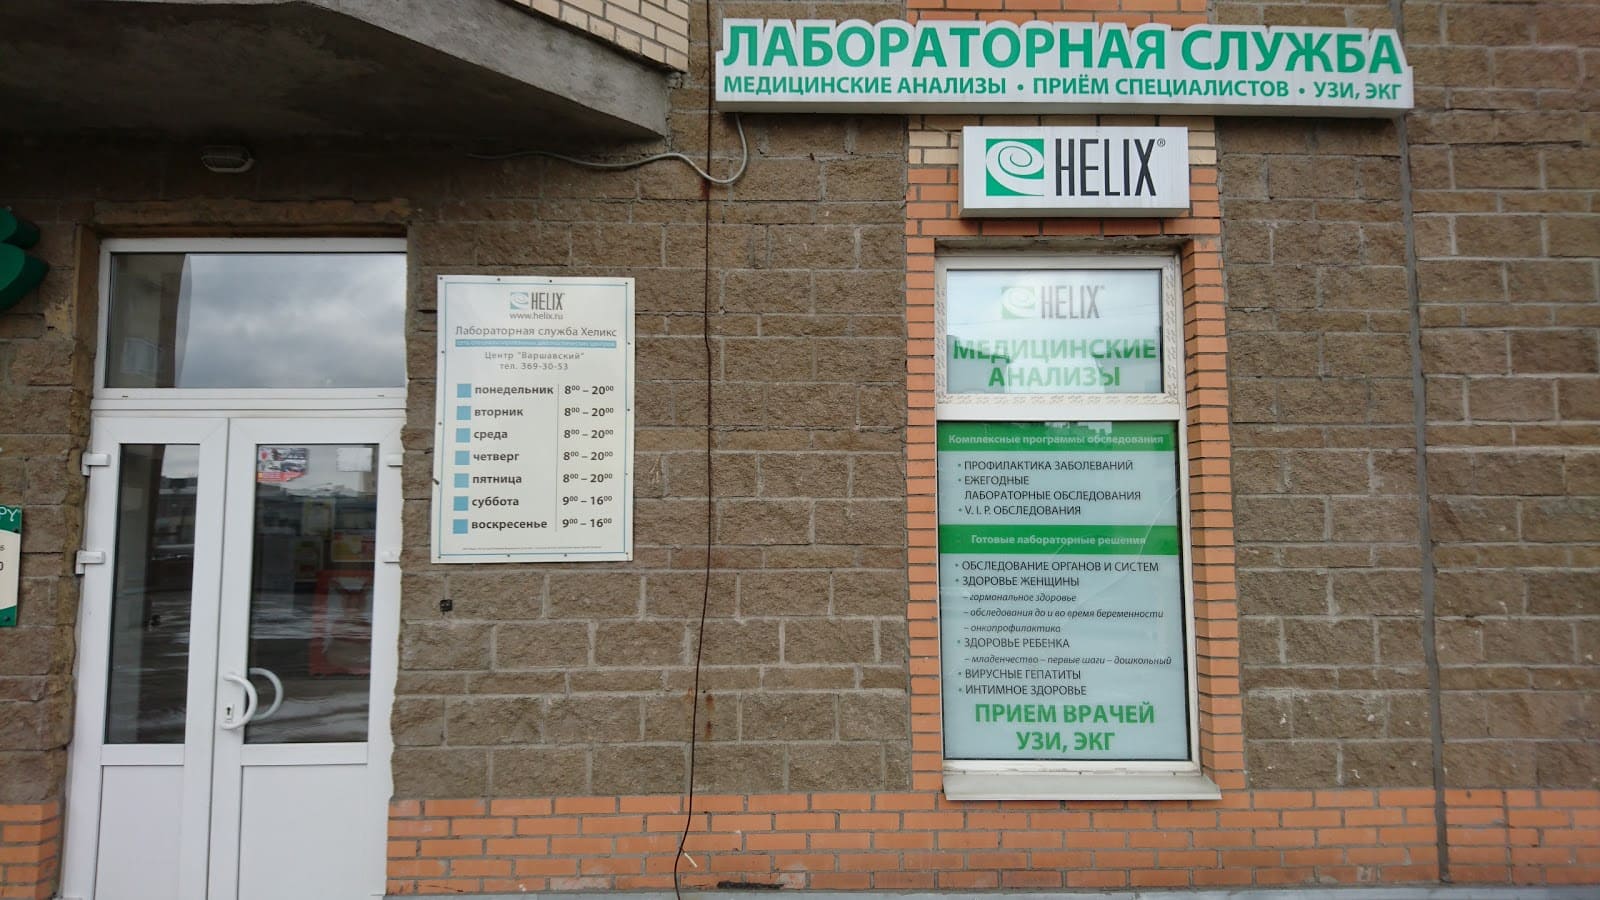 Диагностический центр Хеликс на Варшавской 23 корп. 1 - цены, адрес, режим работы, тип УЗИ, скидки